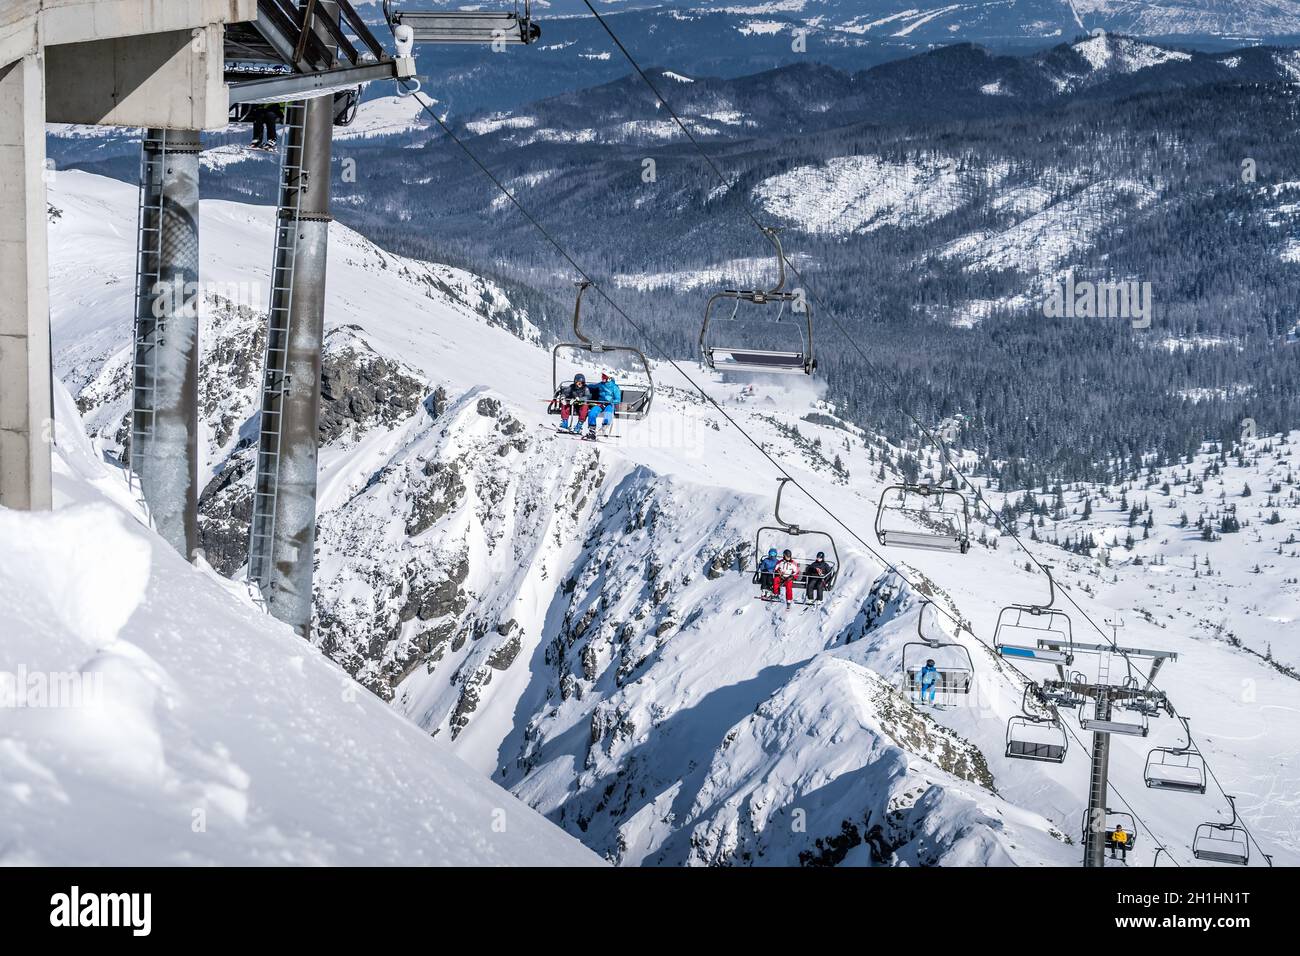 Skifahrer und Snowboarder, die mit einem Skilift die Skipisten des Kasprowy  Wierch erkliften. Urlaub in Hohen Tatra, Polen im Winter Stockfotografie -  Alamy